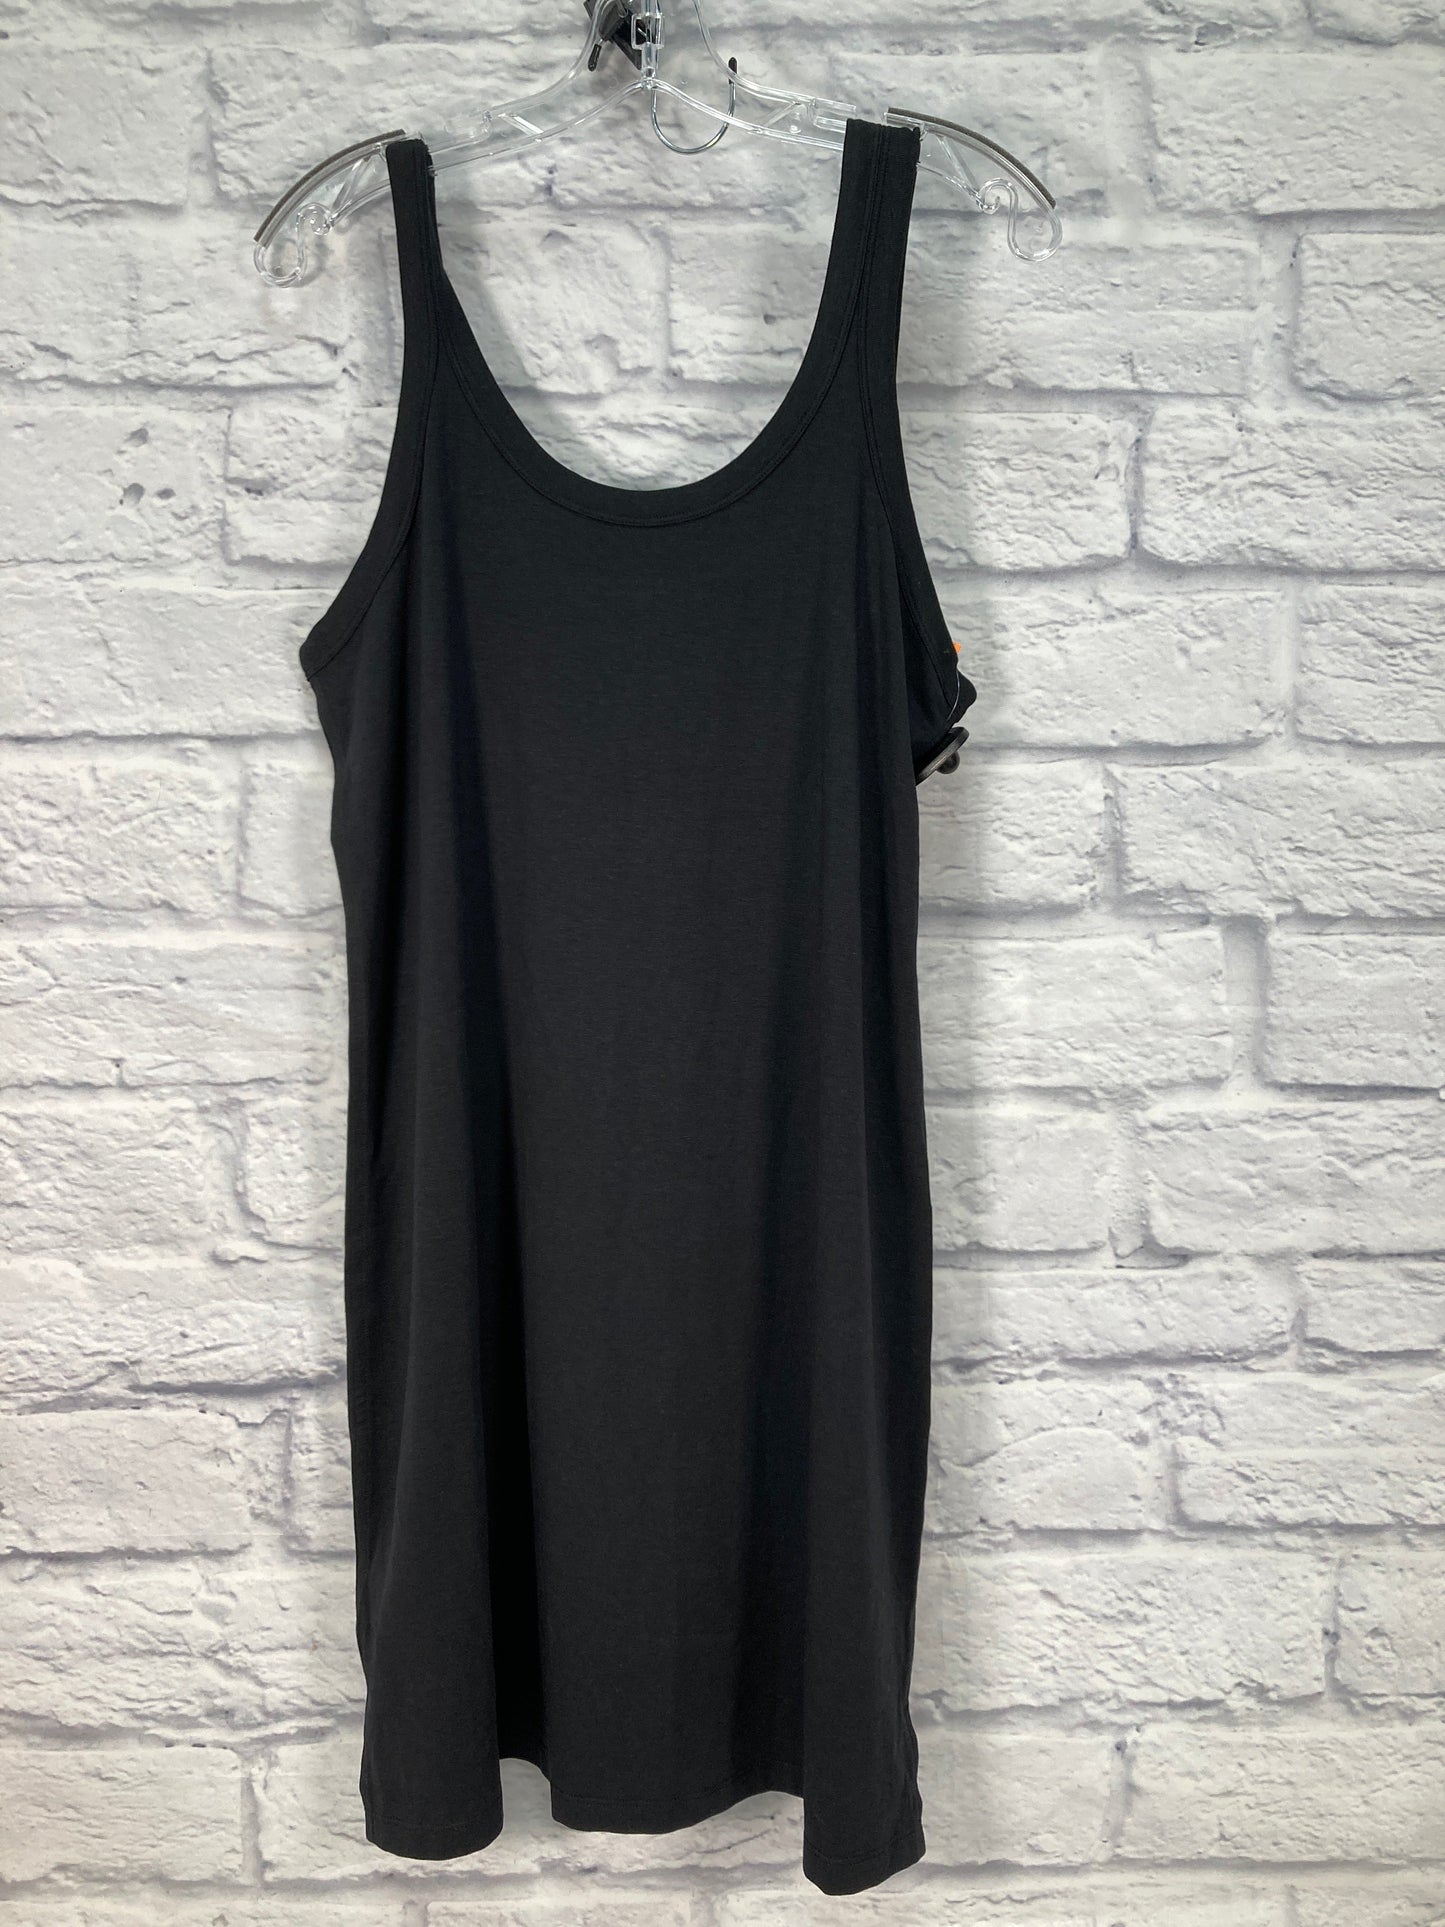 Black Athletic Dress Lululemon, Size M